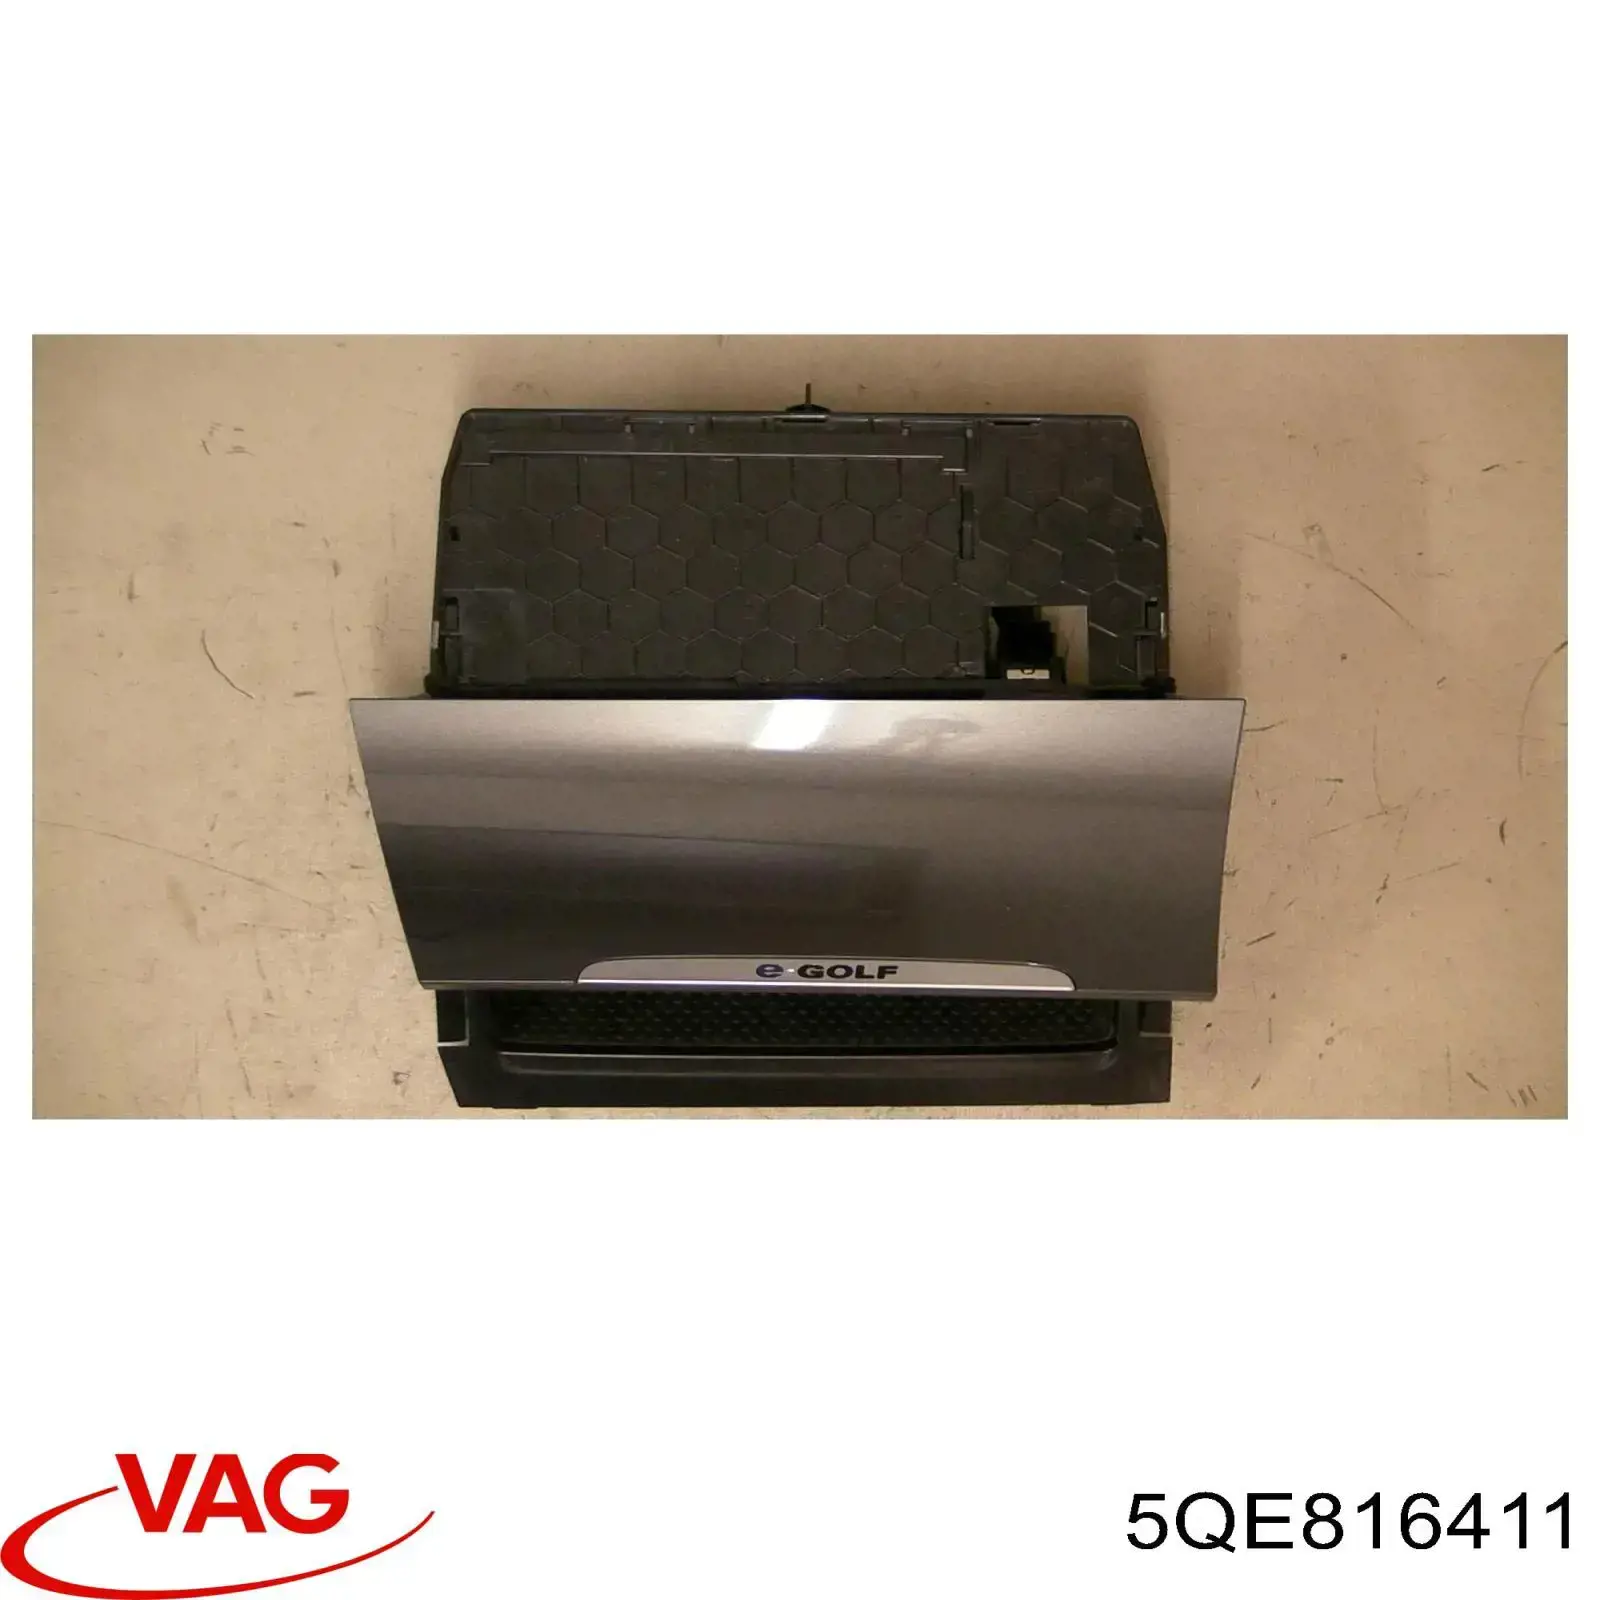 5QE816411 VAG condensador aire acondicionado